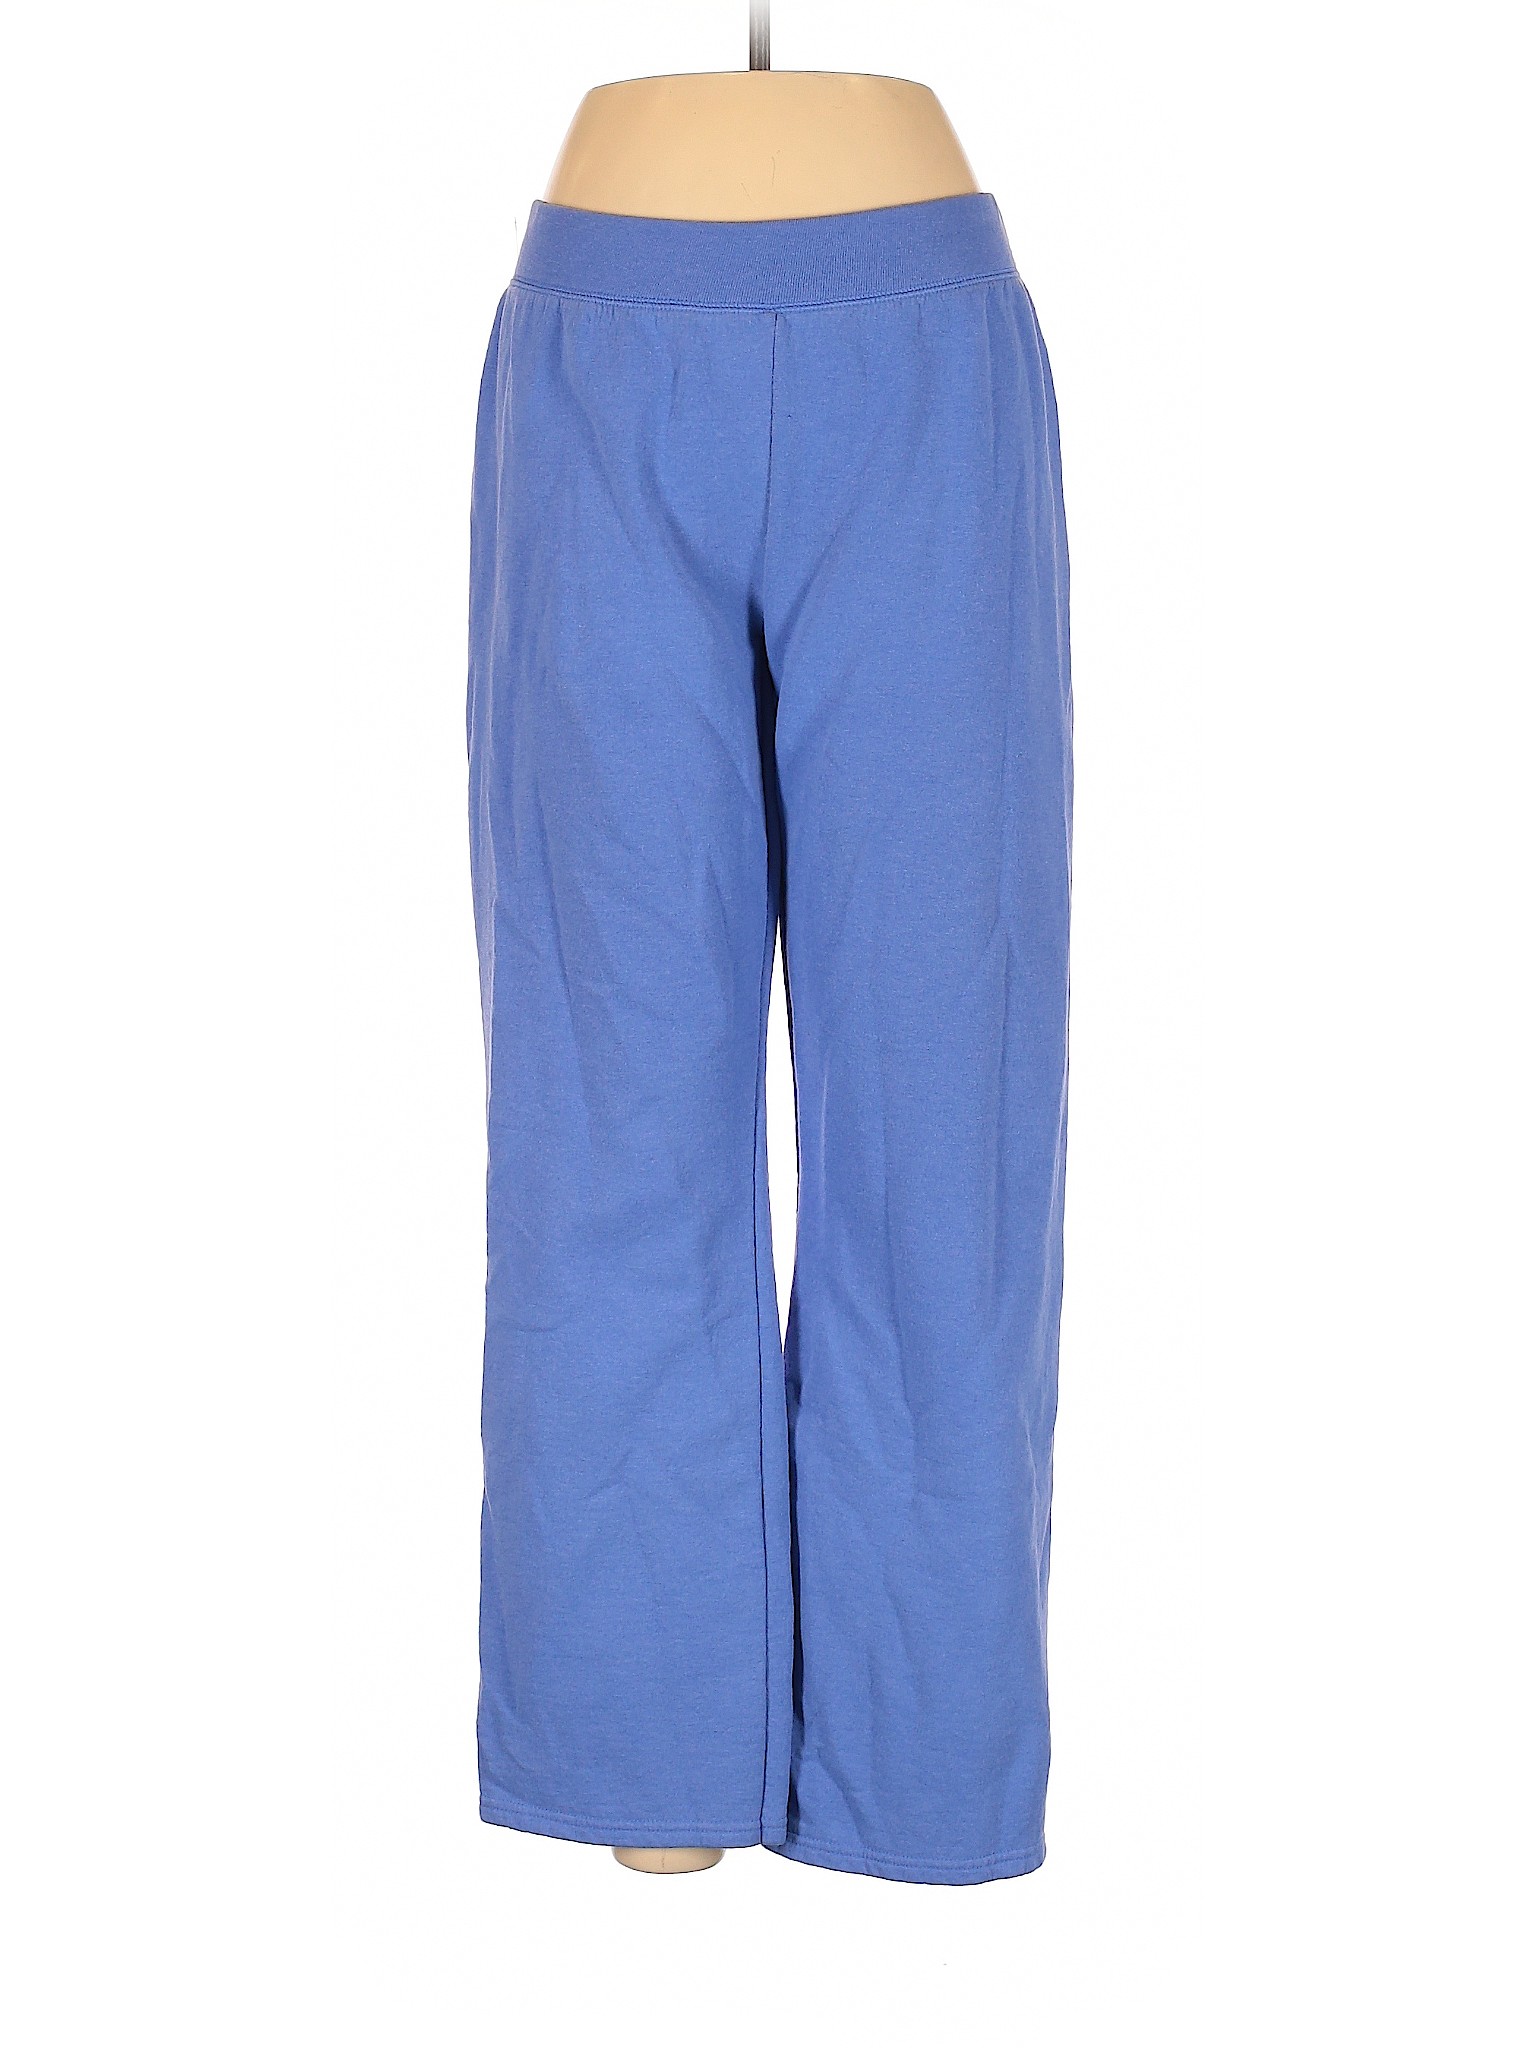 Hanes Women Blue Casual Pants M | eBay